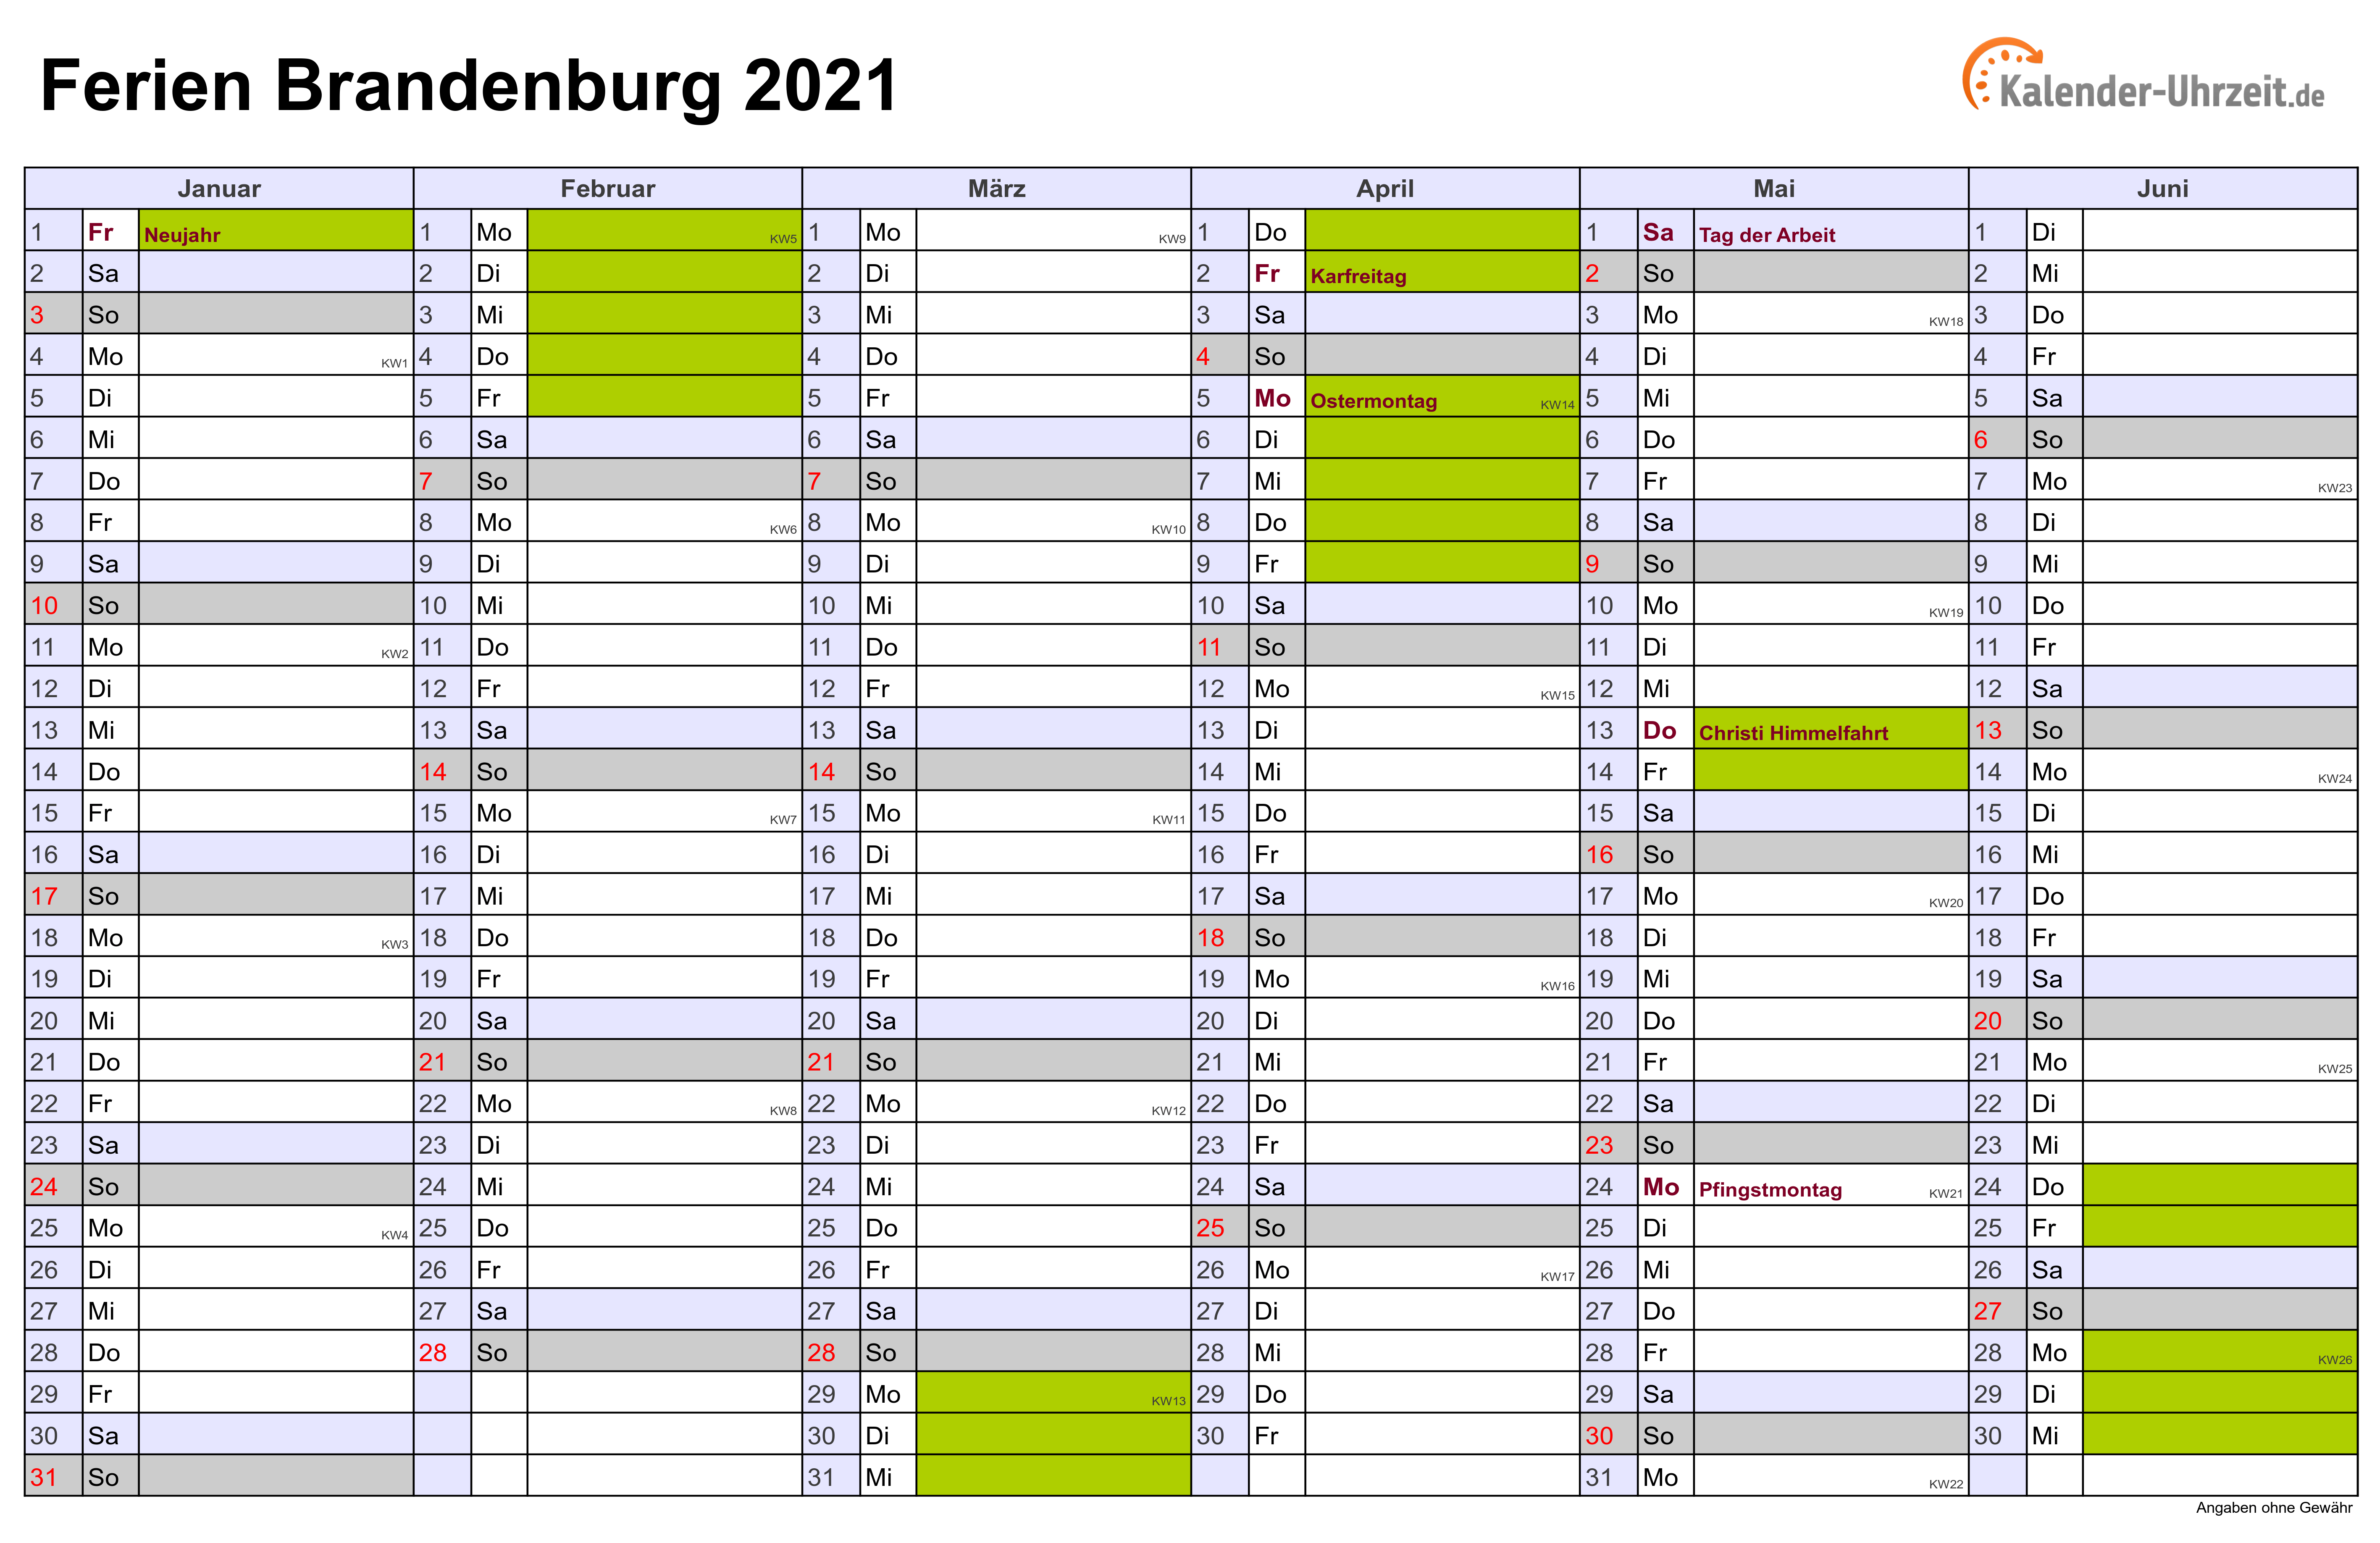 Ferien Brandenburg 2021 - Ferienkalender zum Ausdrucken